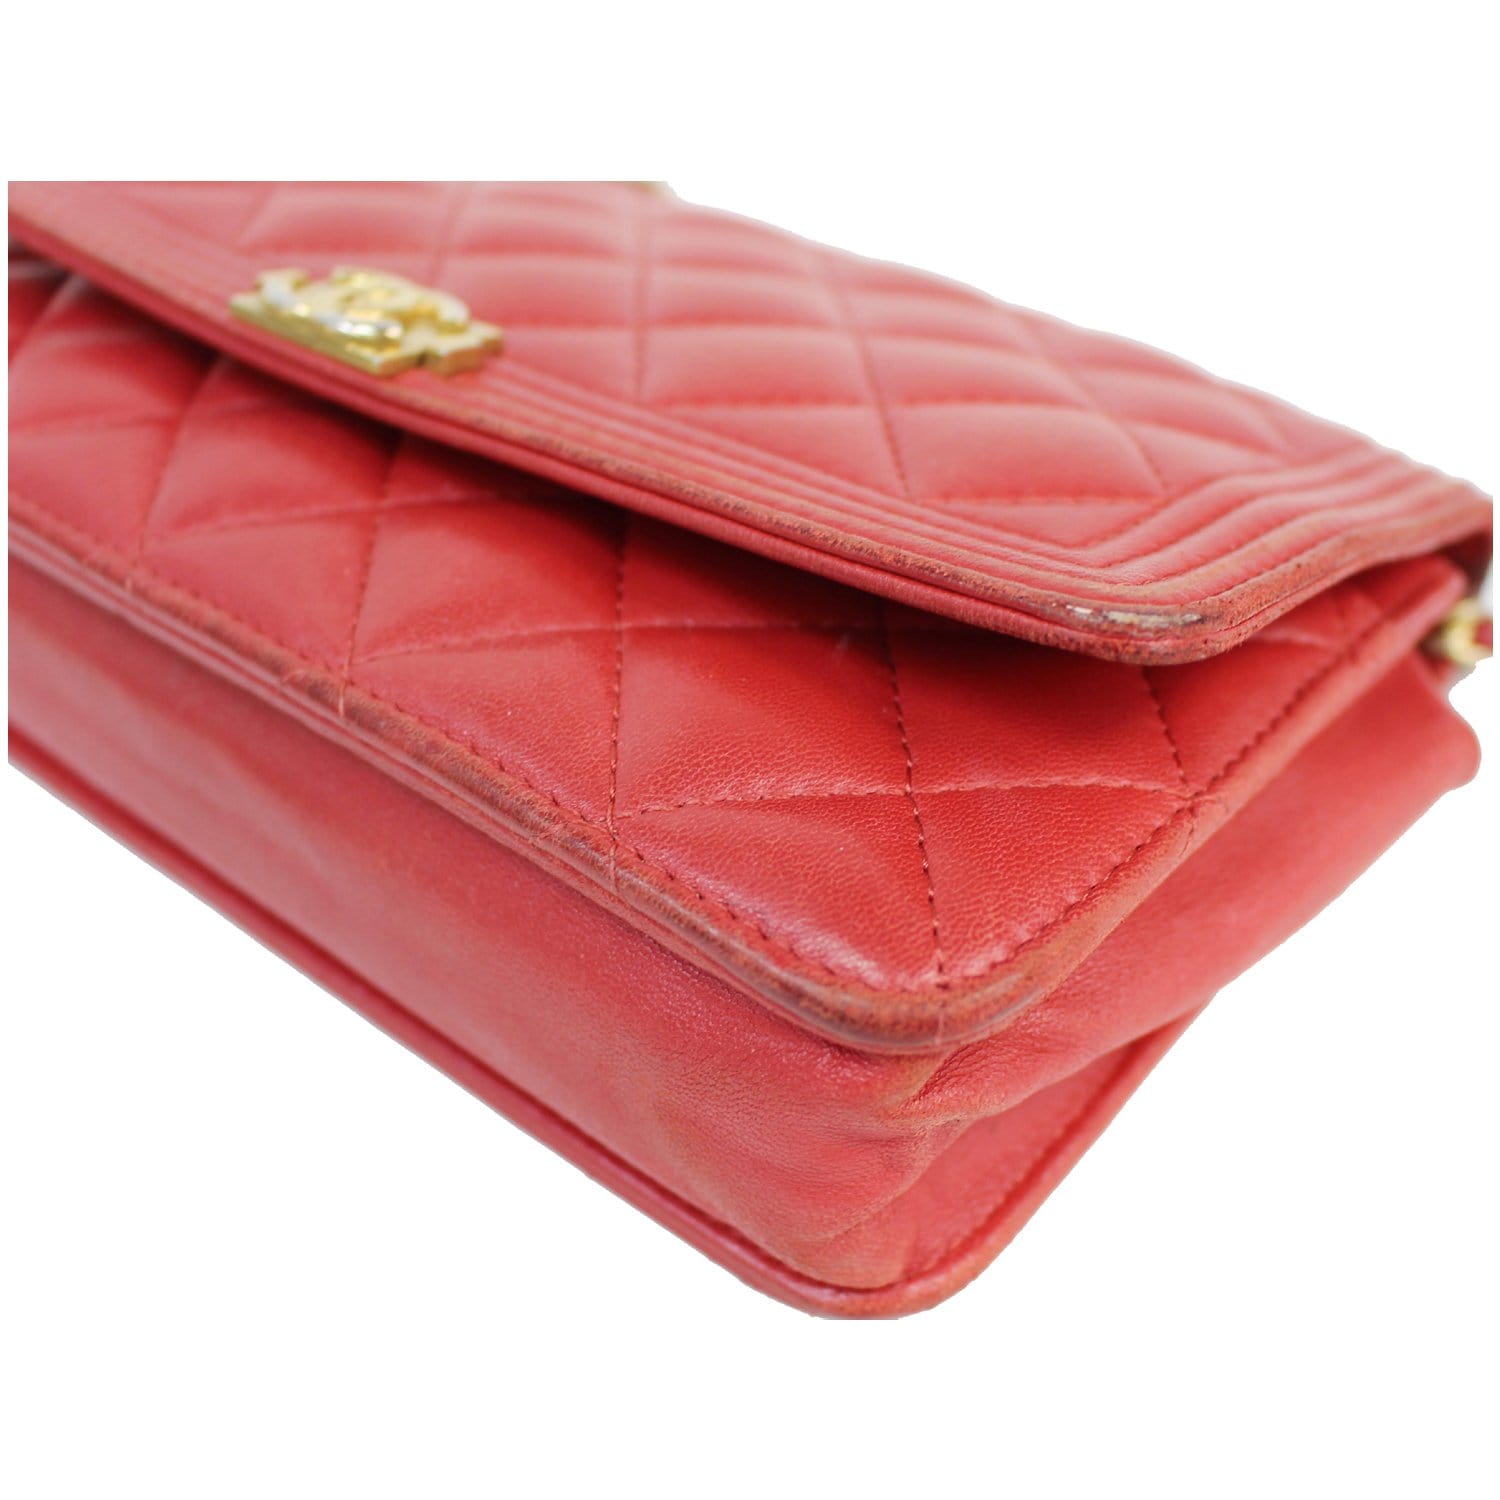 Chanel WOC boy Red Leather ref.21600 - Joli Closet